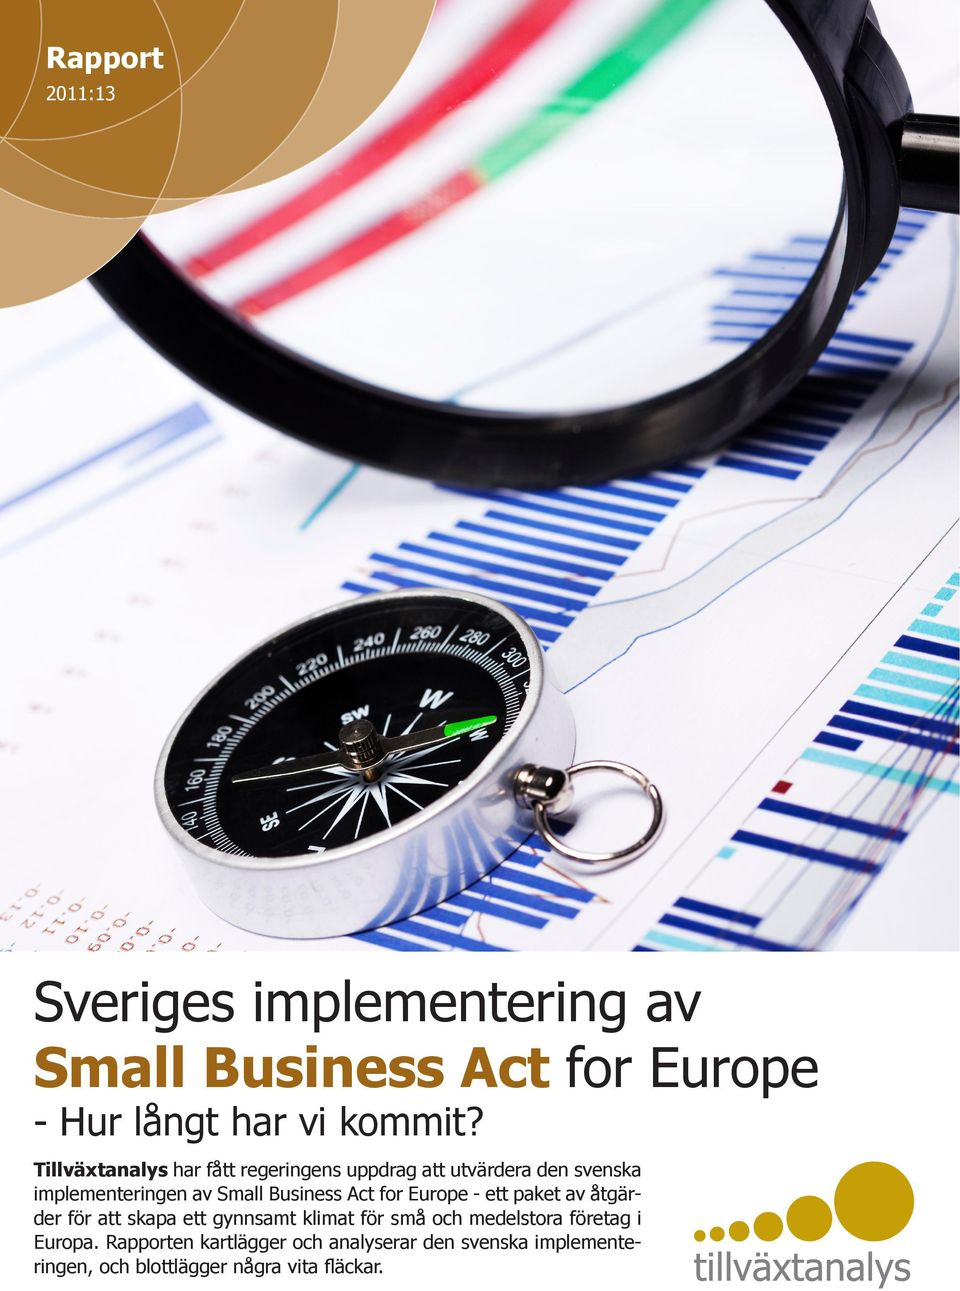 Act for Europe - ett paket av åtgärder för att skapa ett gynnsamt klimat för små och medelstora företag